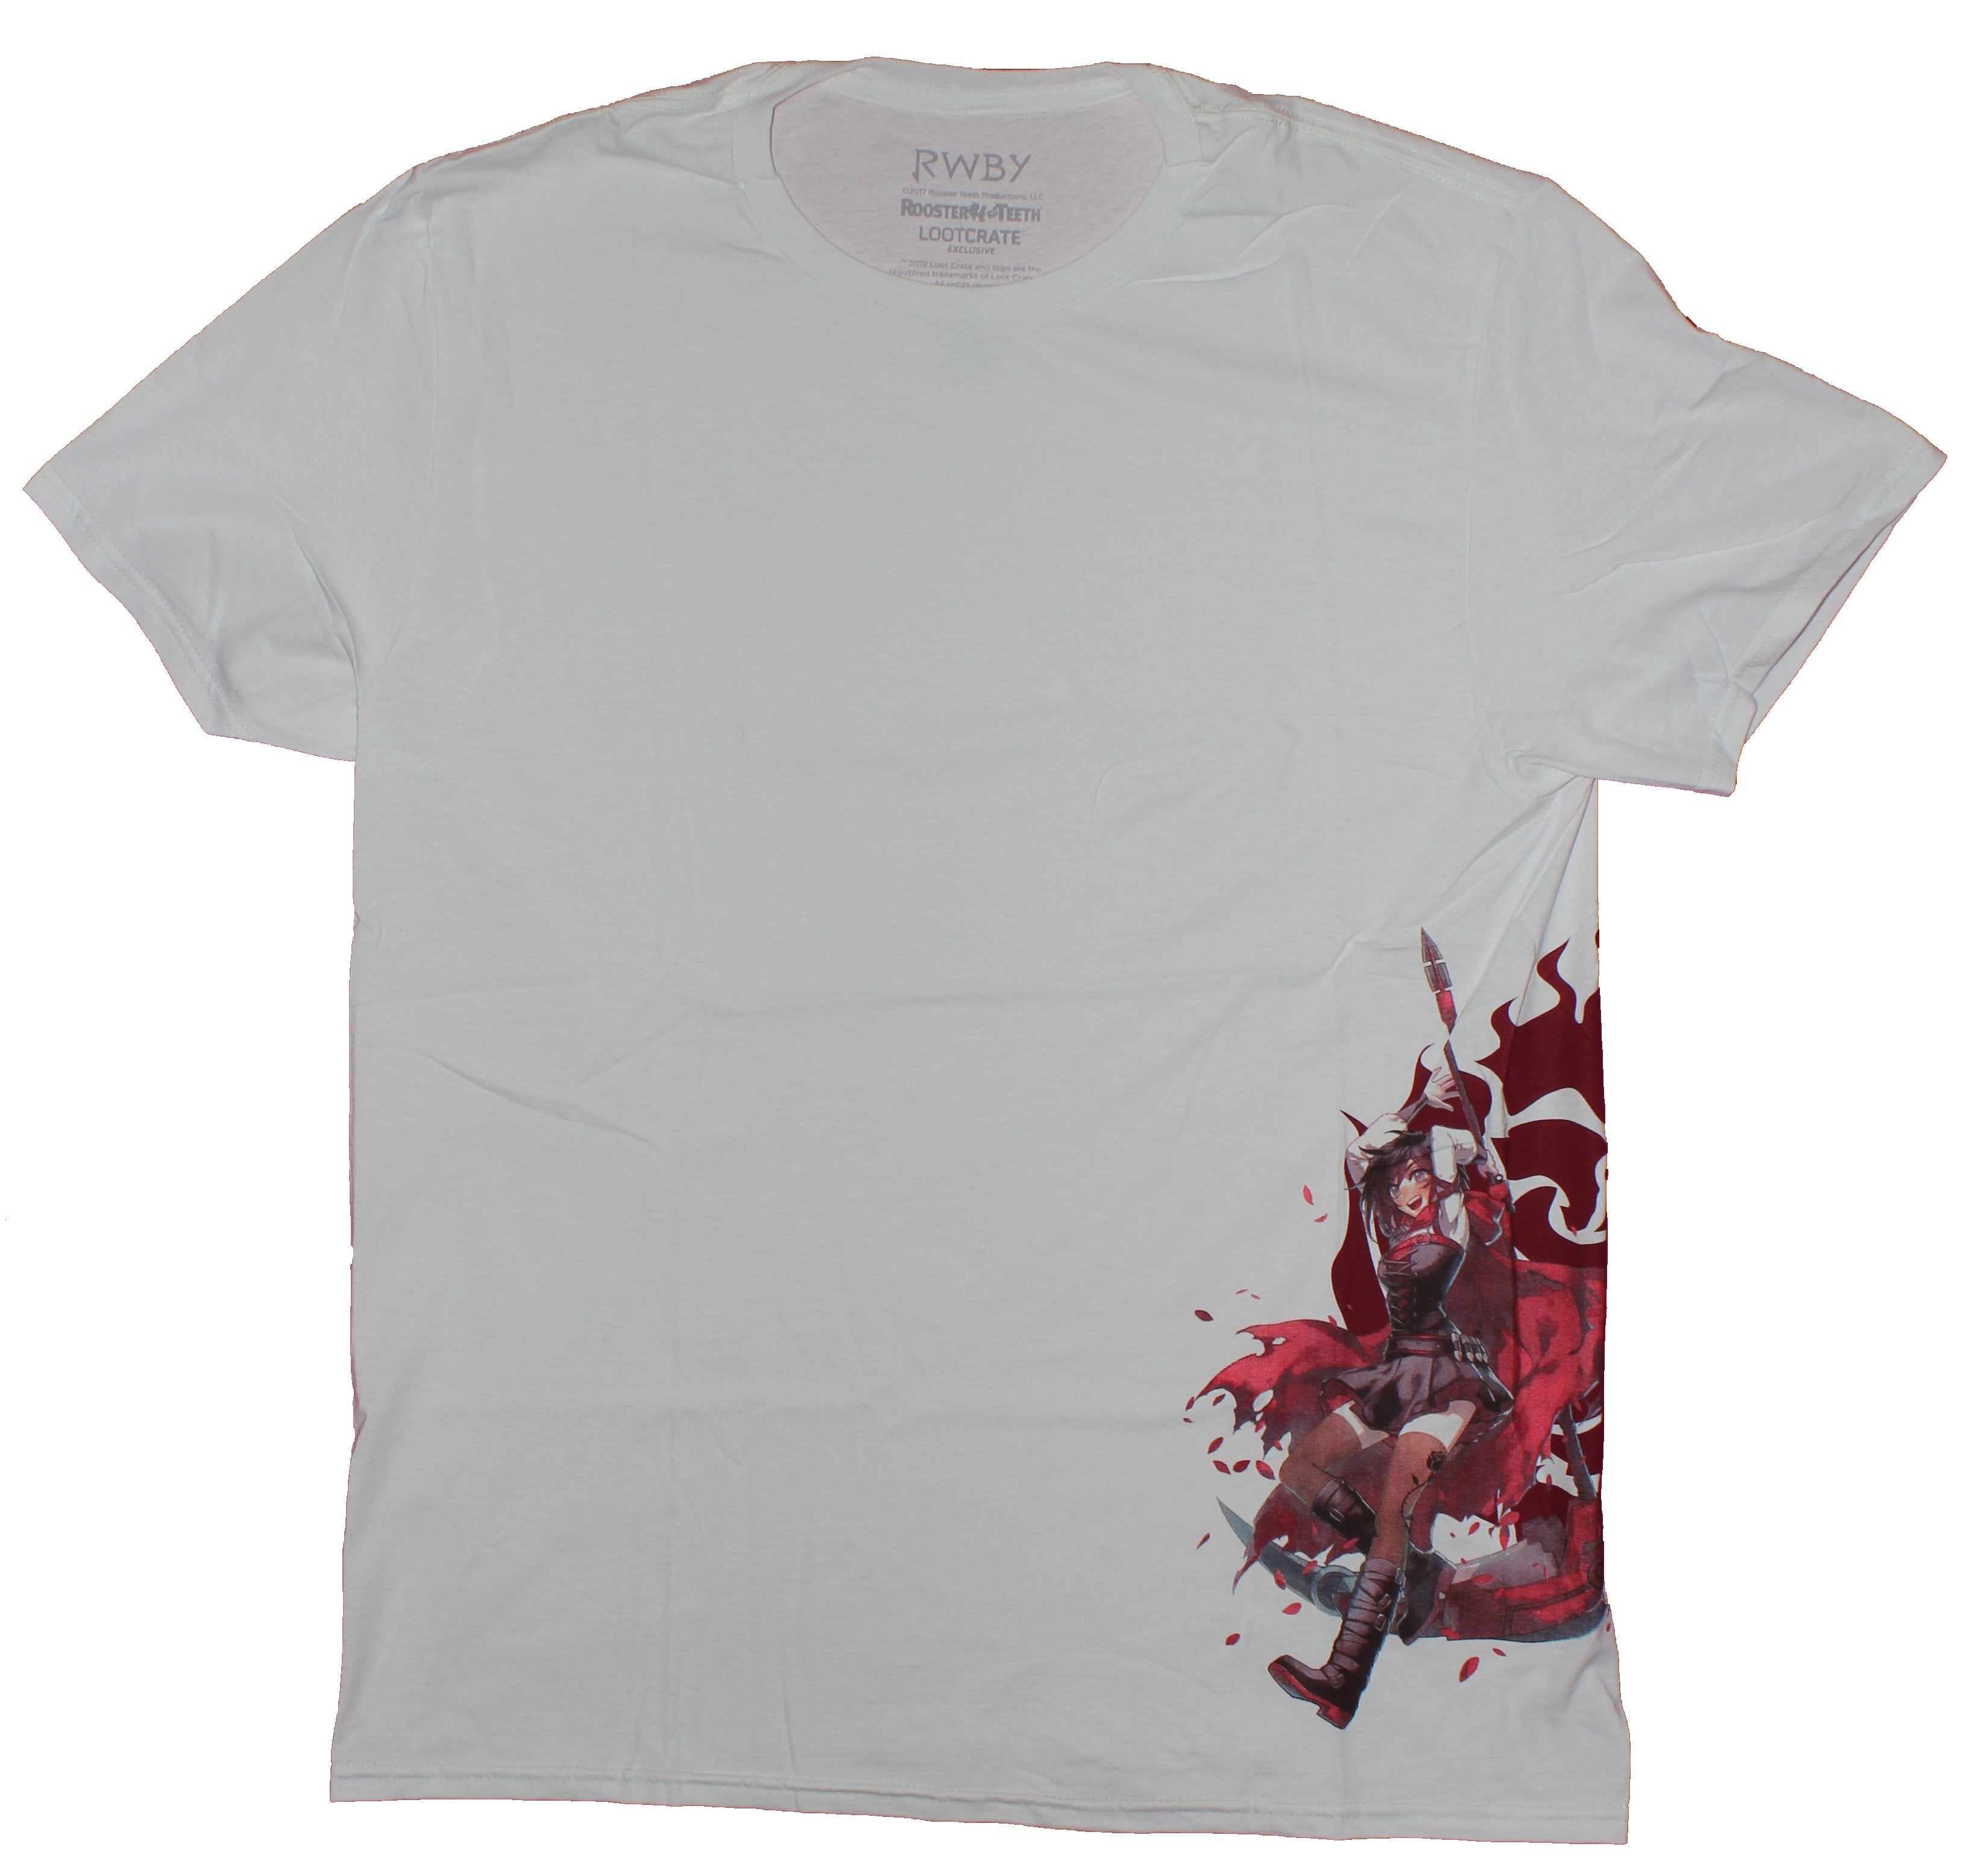 RWBY Mens T-Shirt- Side Print Attacking Character Image